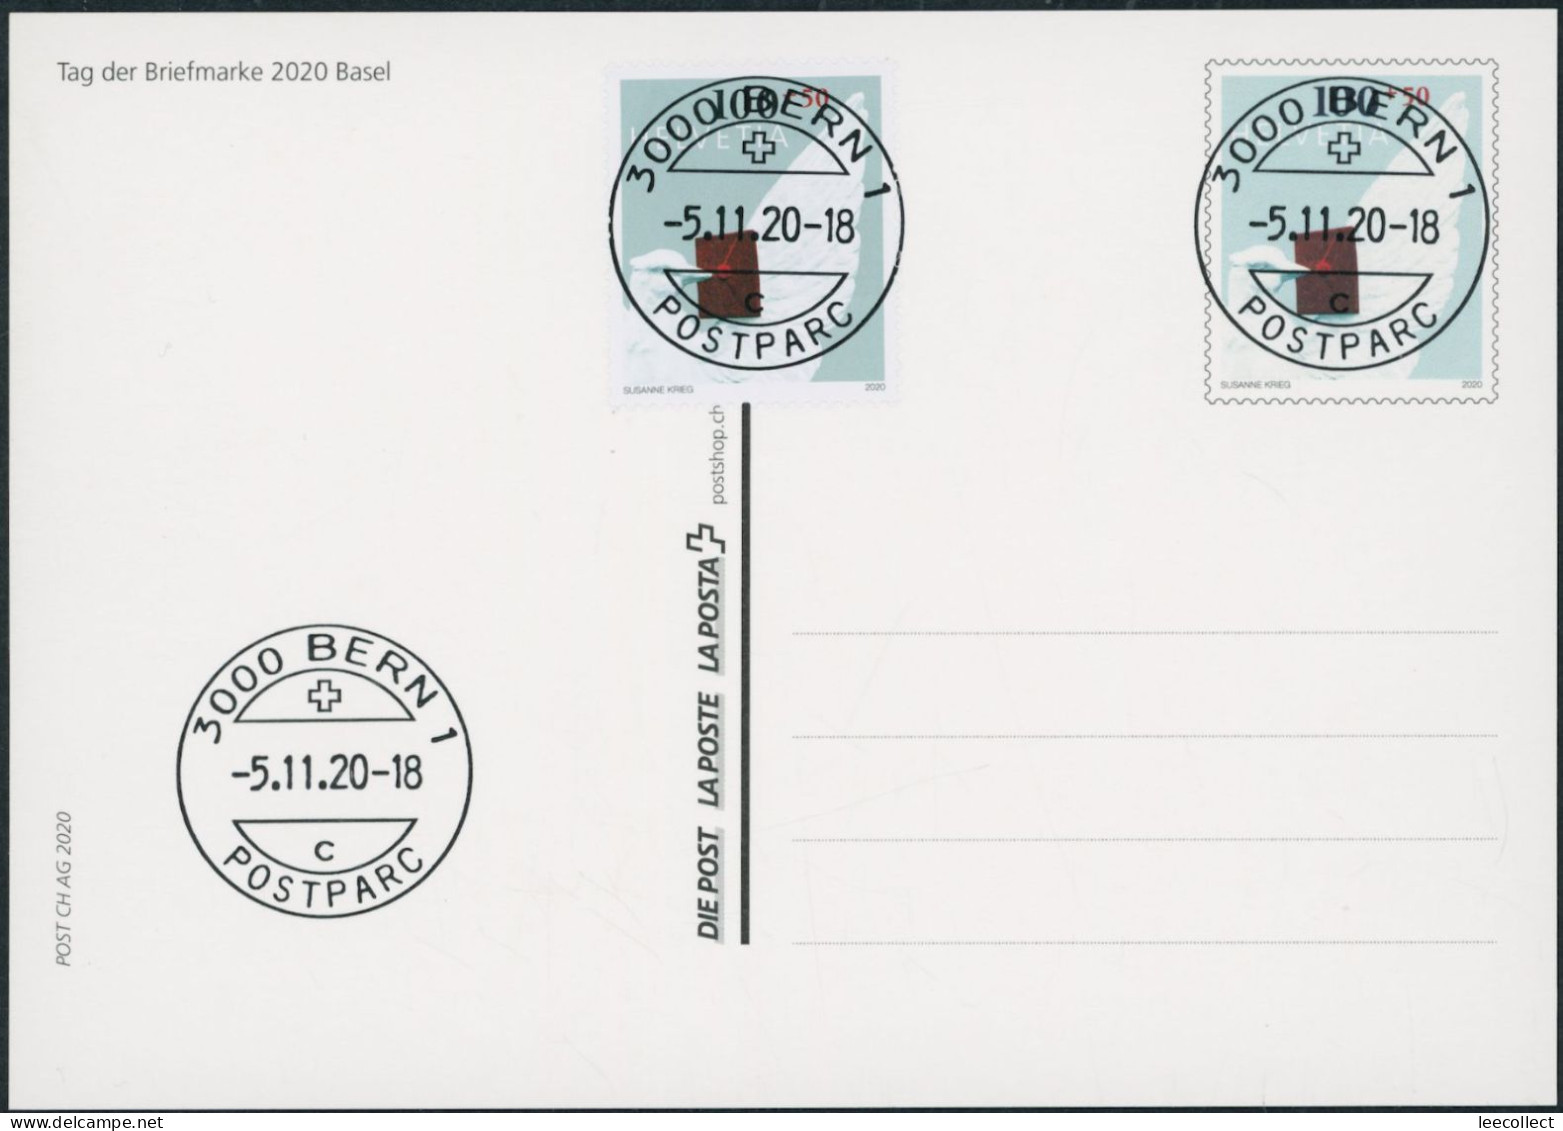 Suisse - 2020 - Tag Der Briefmarke • Basel - Bildpostkarte - Combo FDC ET - Ersttag Voll Stempel - Storia Postale